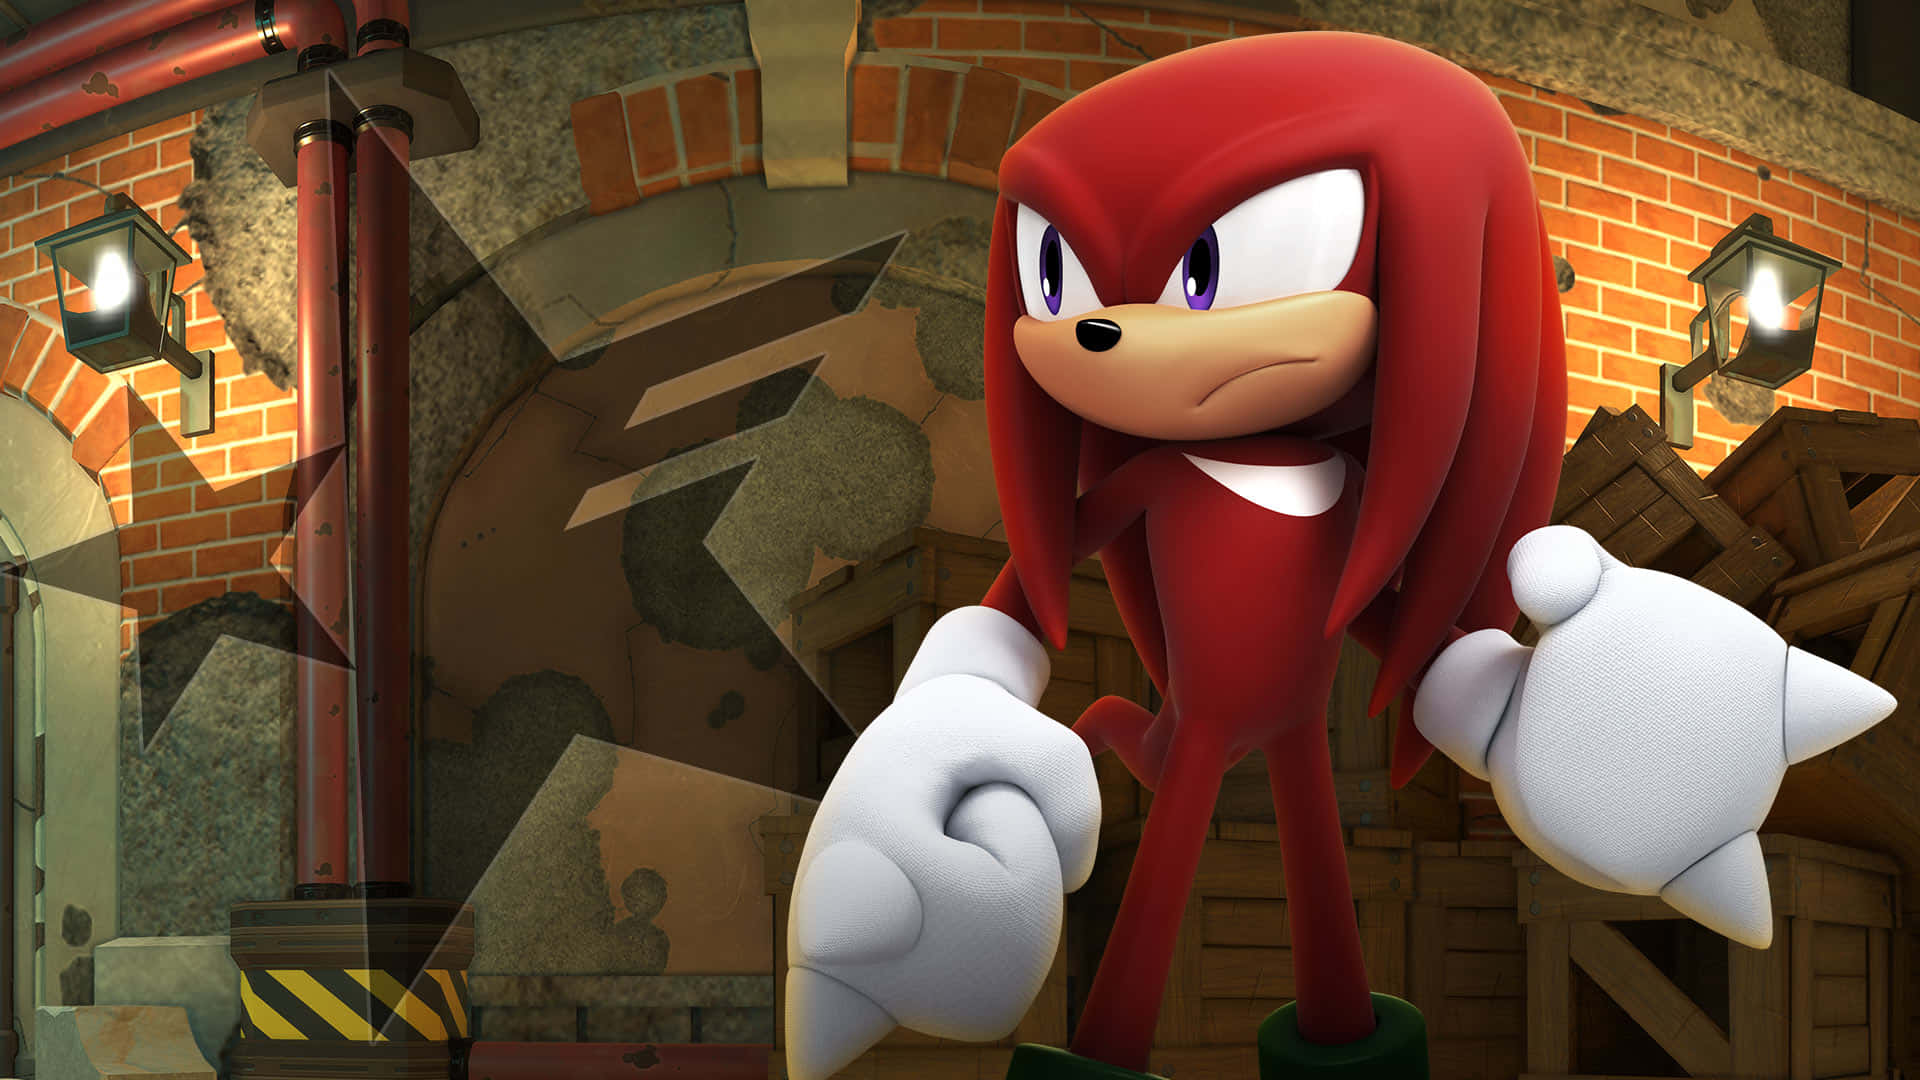 Sonicthe Hedgehog I En Röd Outfit Står Framför En Tegelvägg. Wallpaper